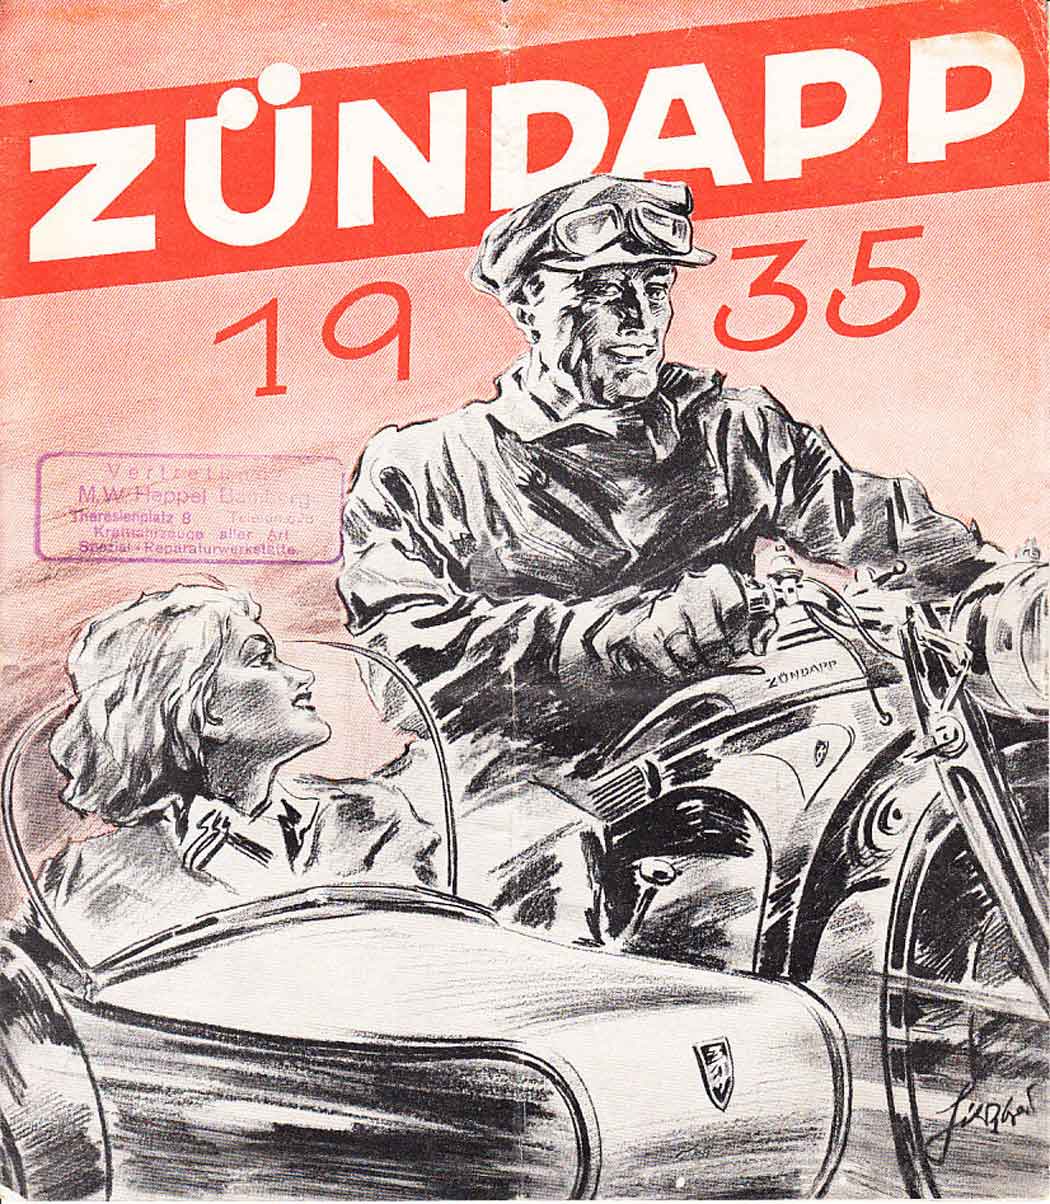 Zündapp motorcycles